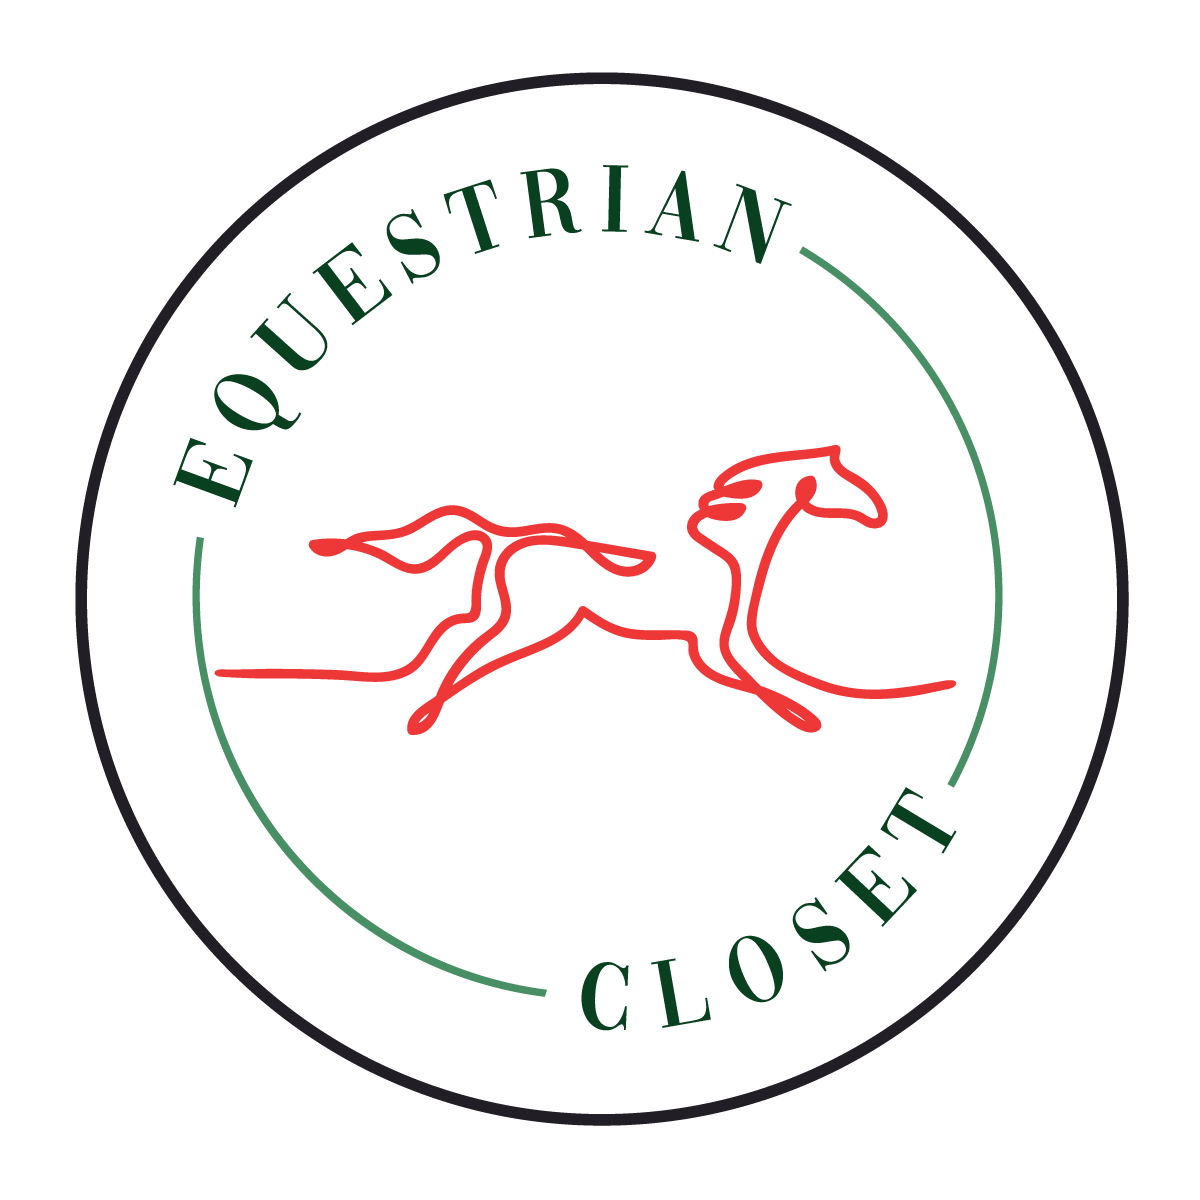 Company Spotlight: Equestrian Closet